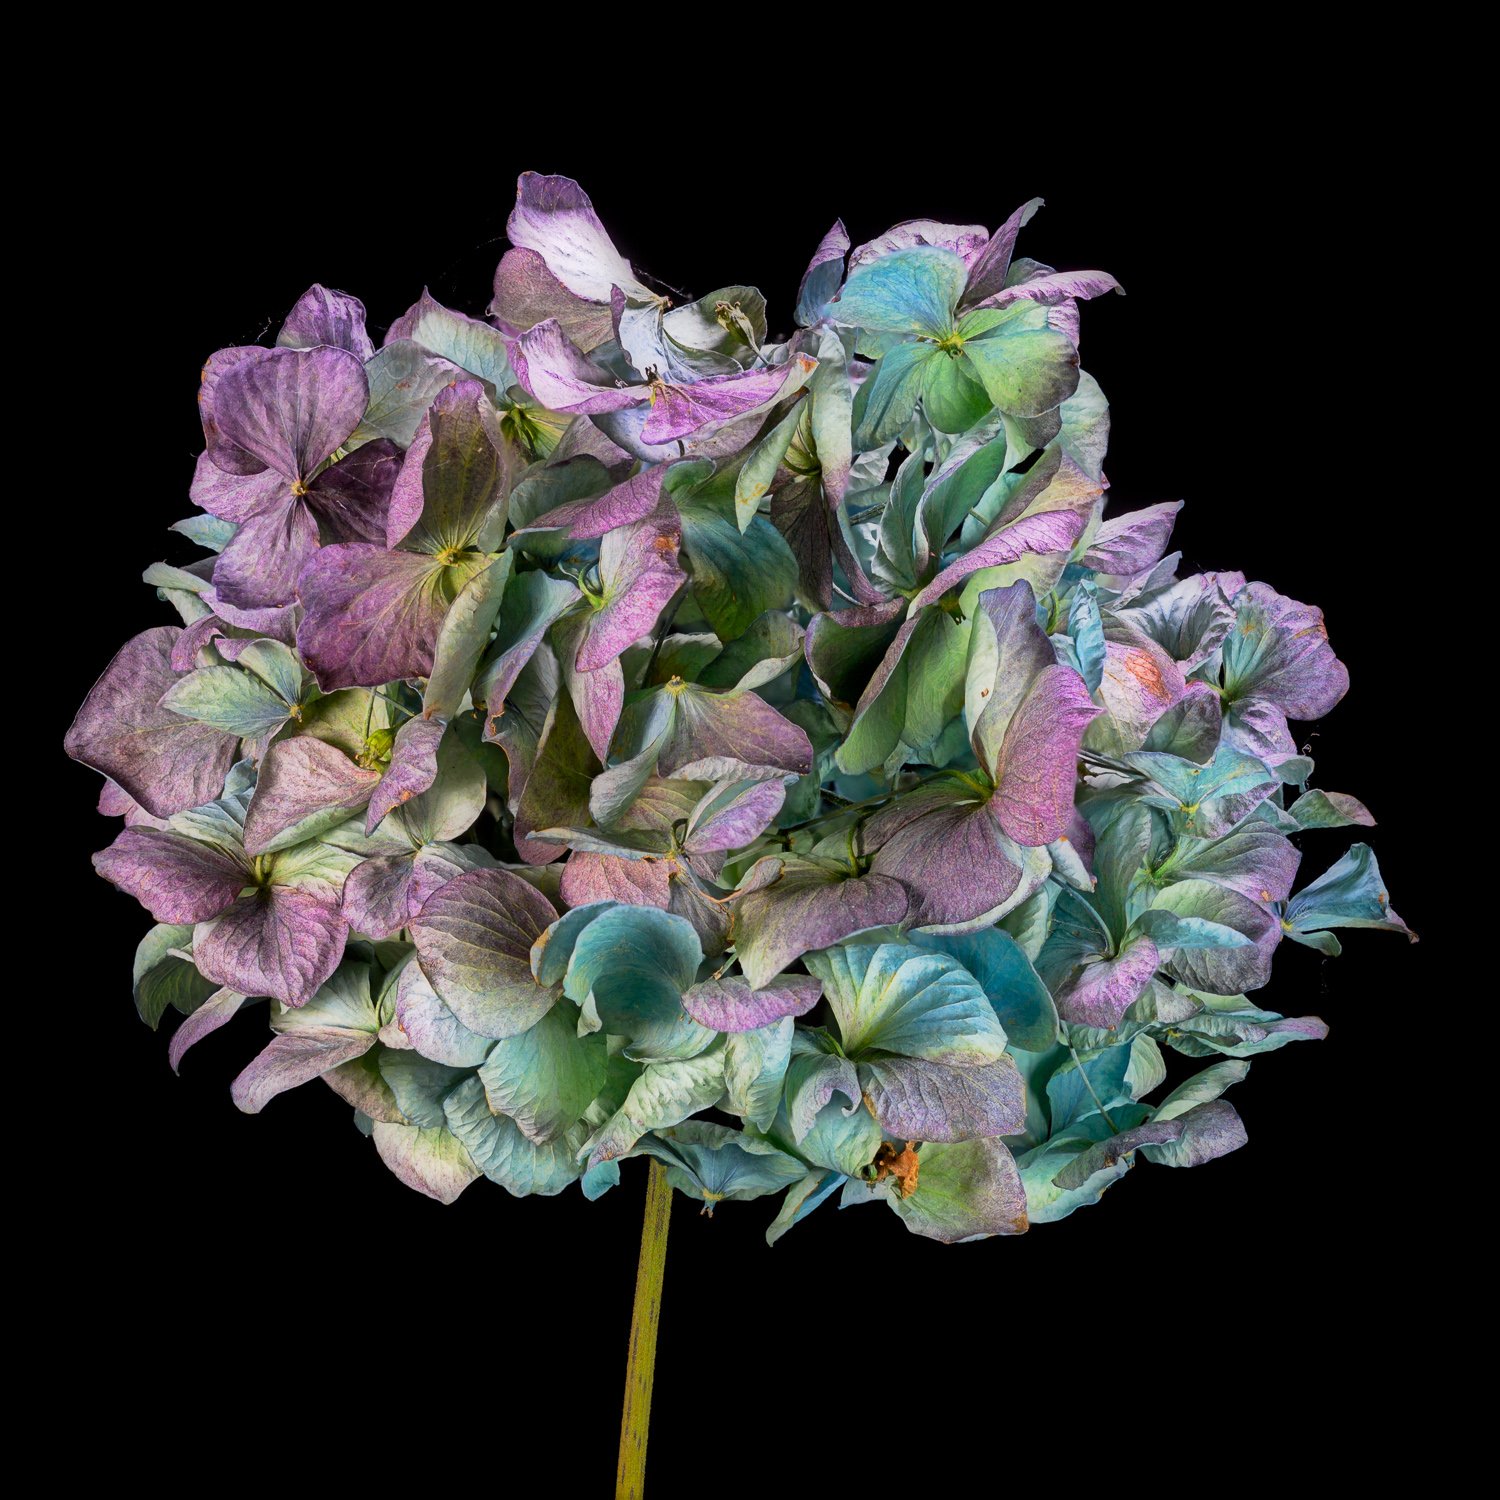 Hortensia als droogbloem - toont de veelzijdigheid van de hydrangea.